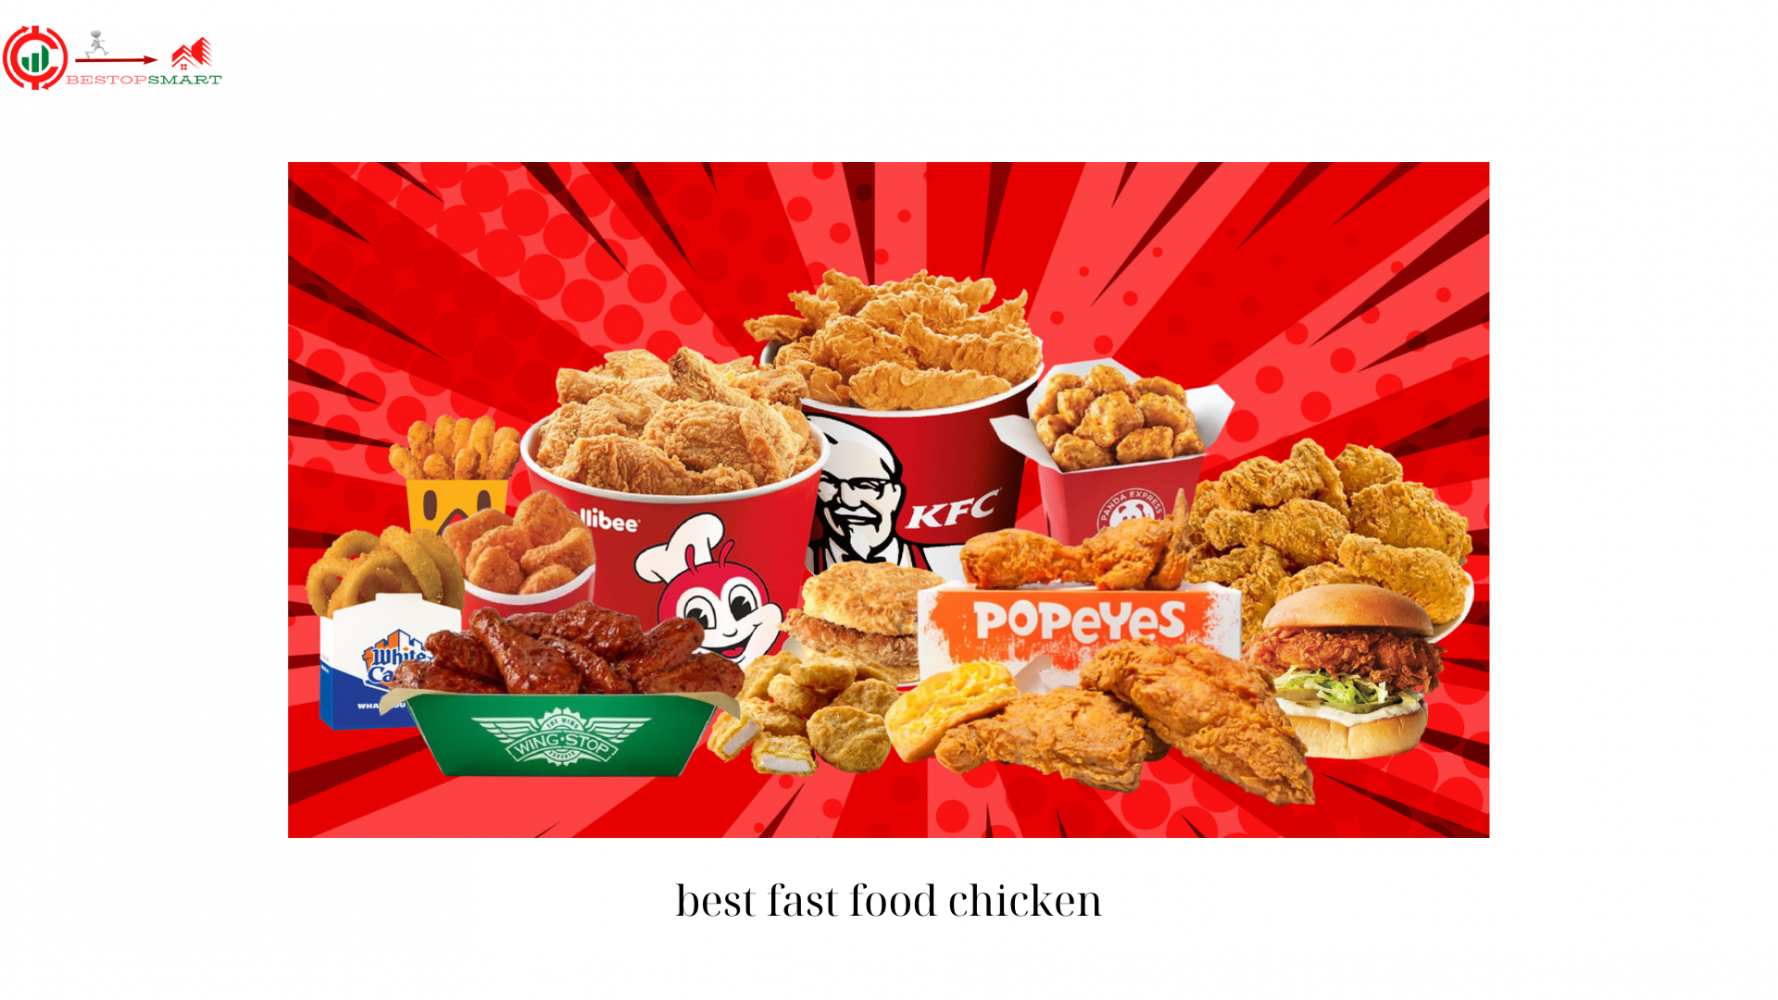 best fast food chicken